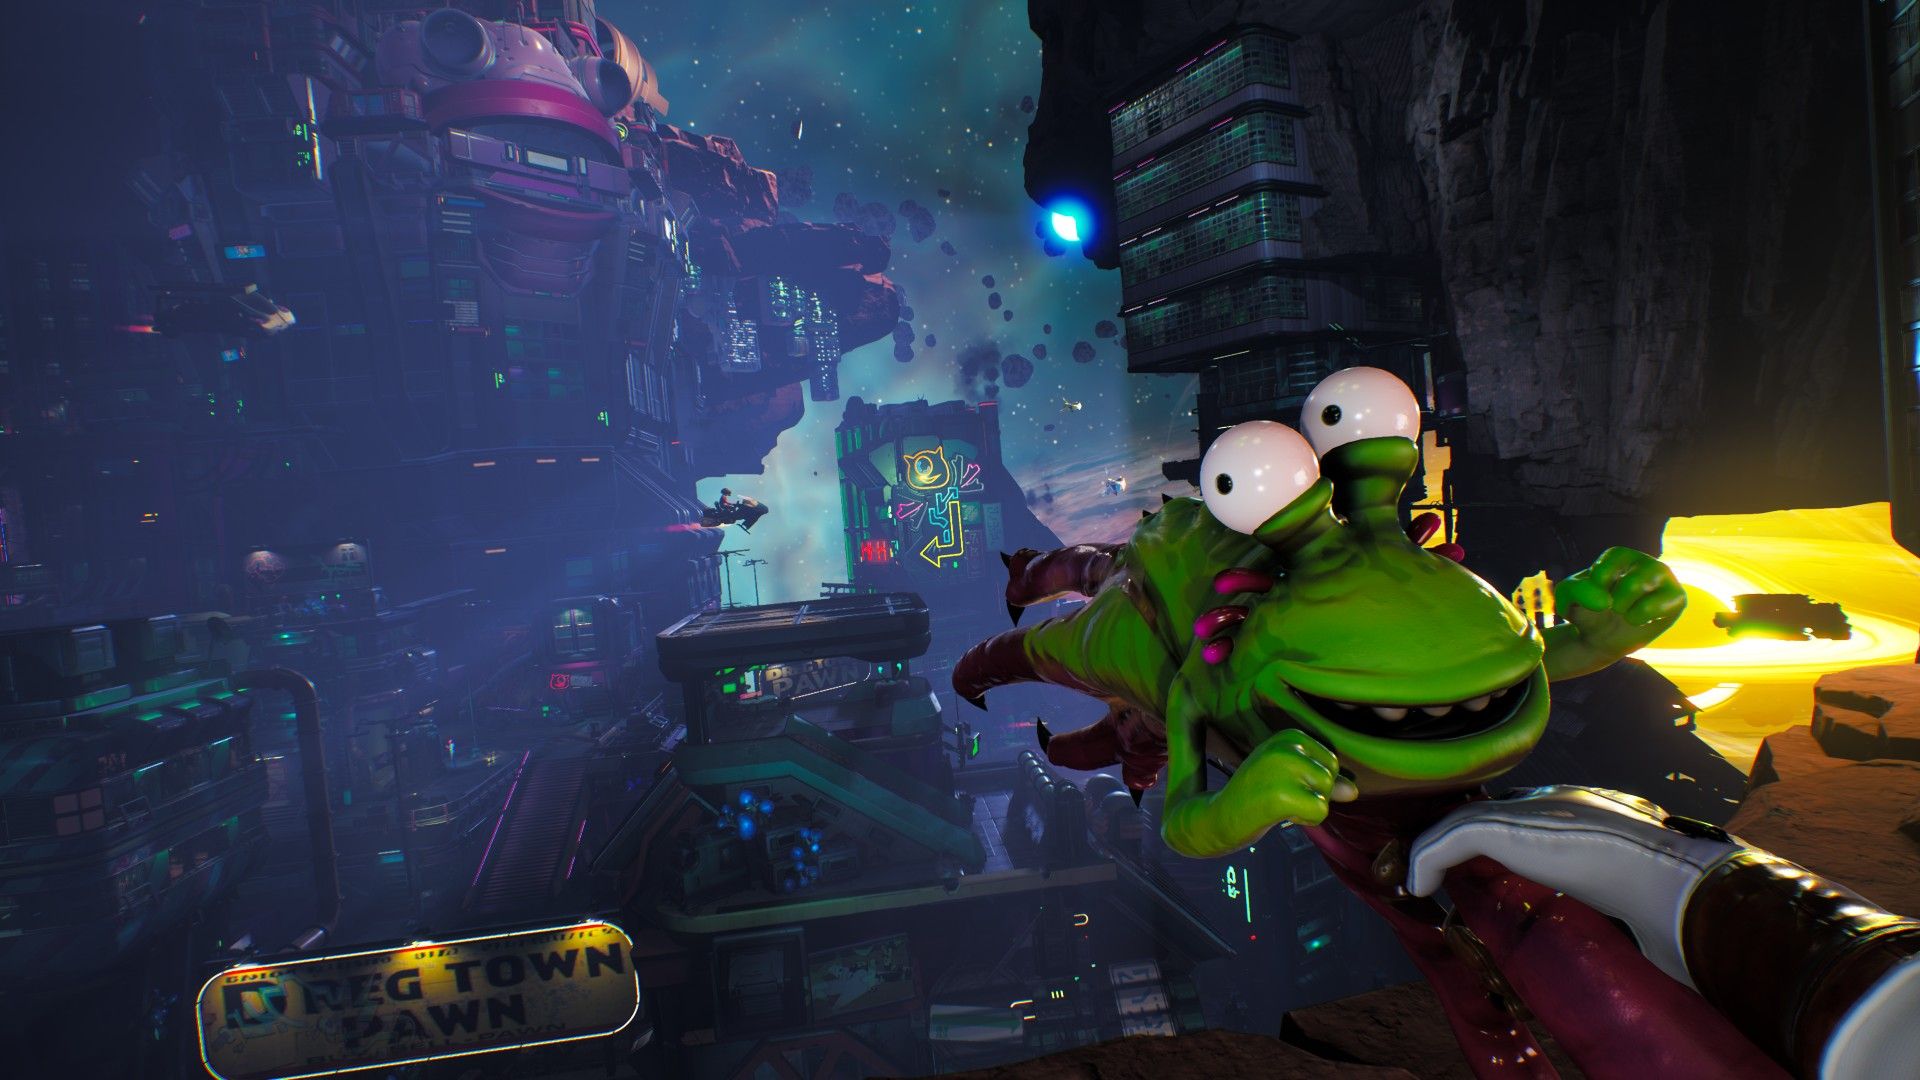 High on Life's Dreg Town city, avec le joueur tenant un pistolet extraterrestre en forme de grenouille à la première personne.